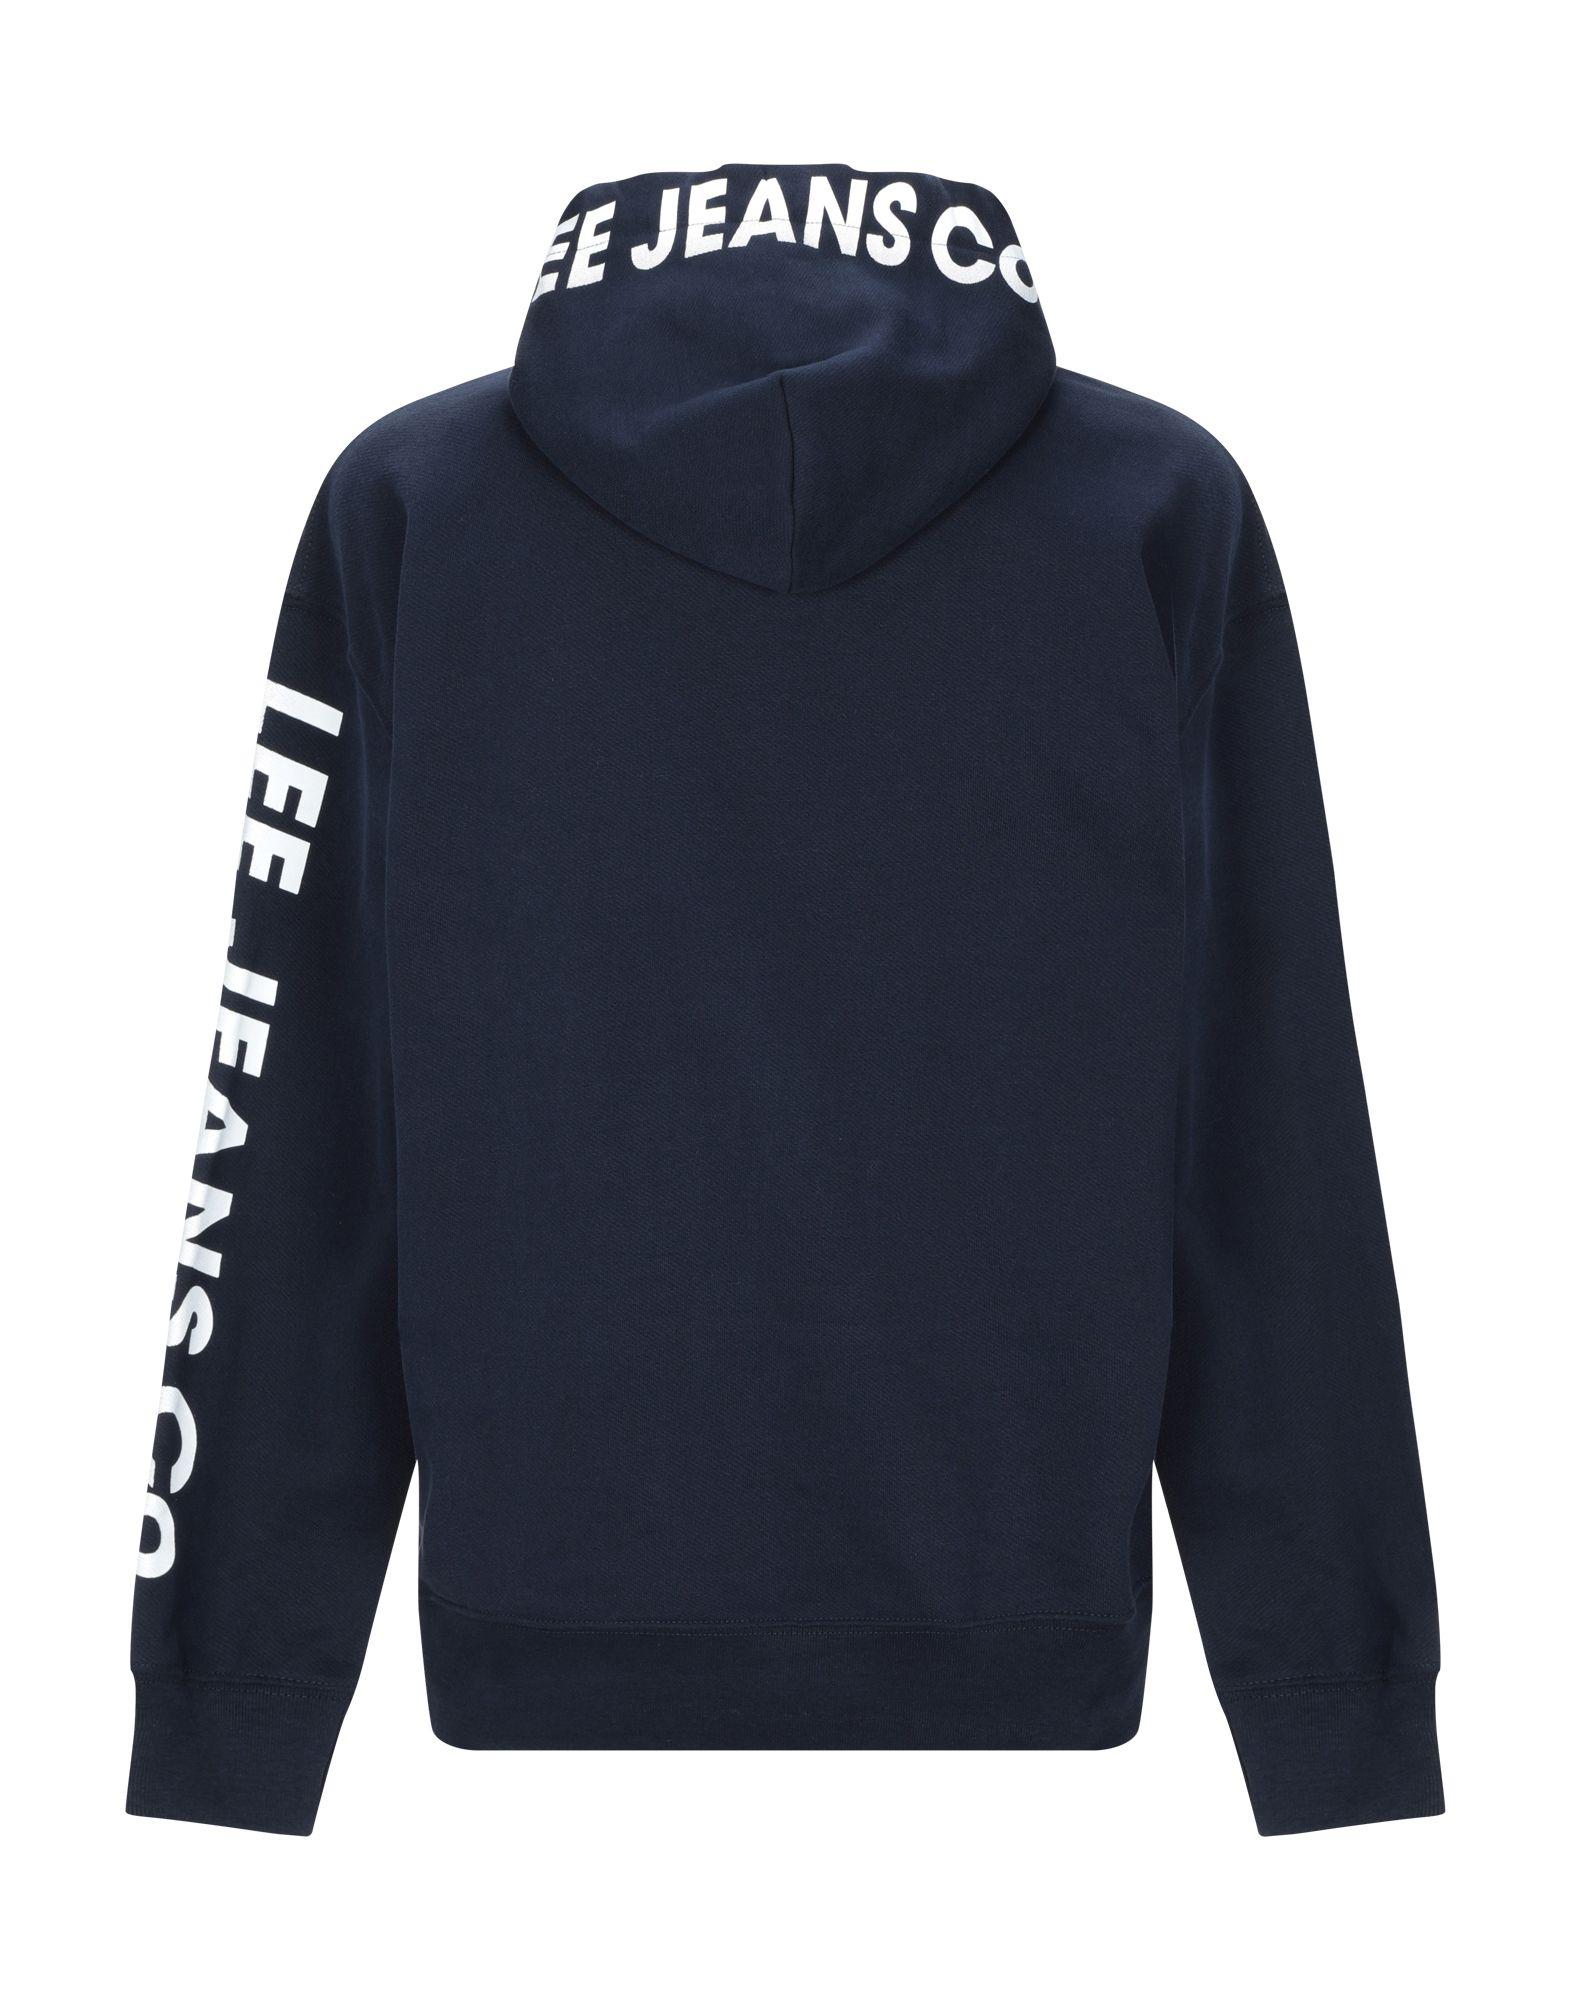 Lee Jeans Fleece Sweatshirt in Dark Blue (Blue) for Men - Lyst